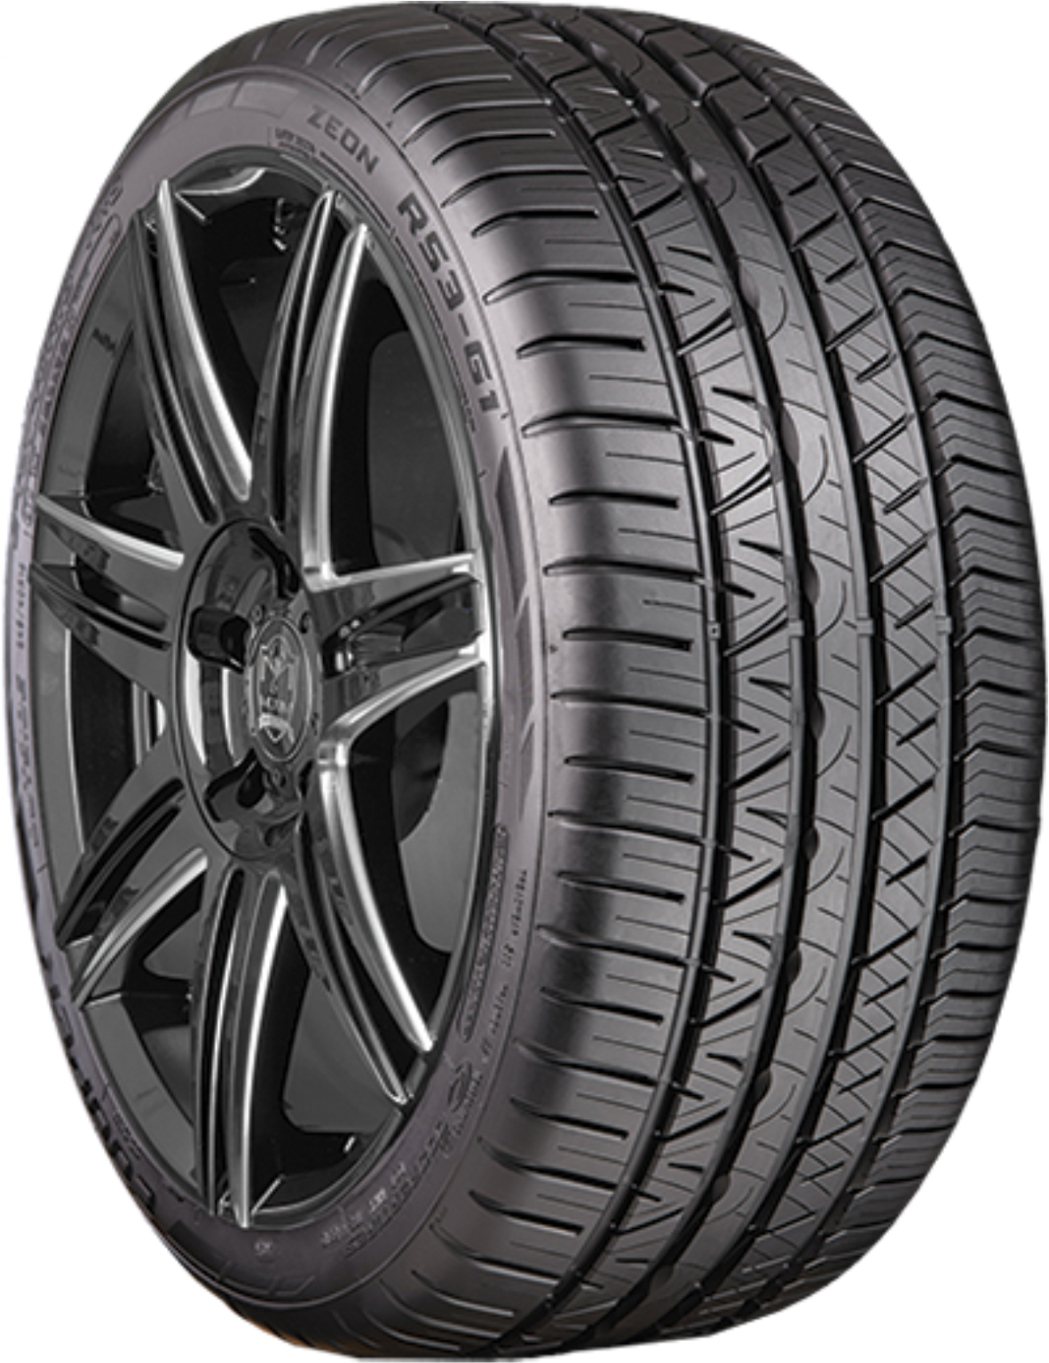 全新ZEON RS3-G1™是「COOPERTIRES固鉑輪胎」旗下最頂級、最先...